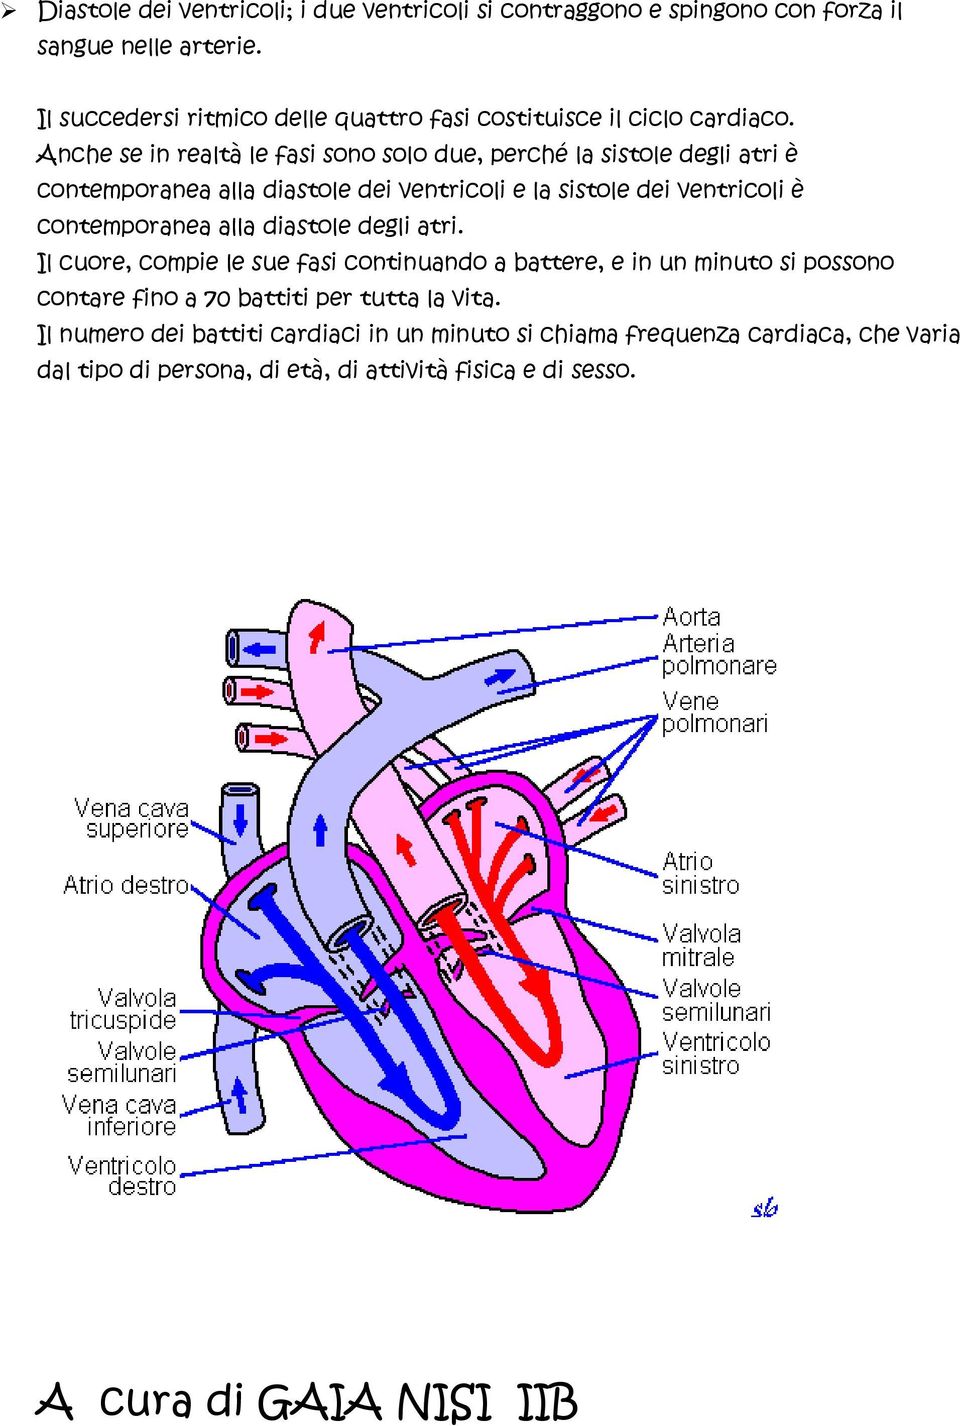 Anche se in realtà le fasi sono solo due, perché la sistole degli atri è contemporanea alla diastole dei ventricoli e la sistole dei ventricoli è contemporanea